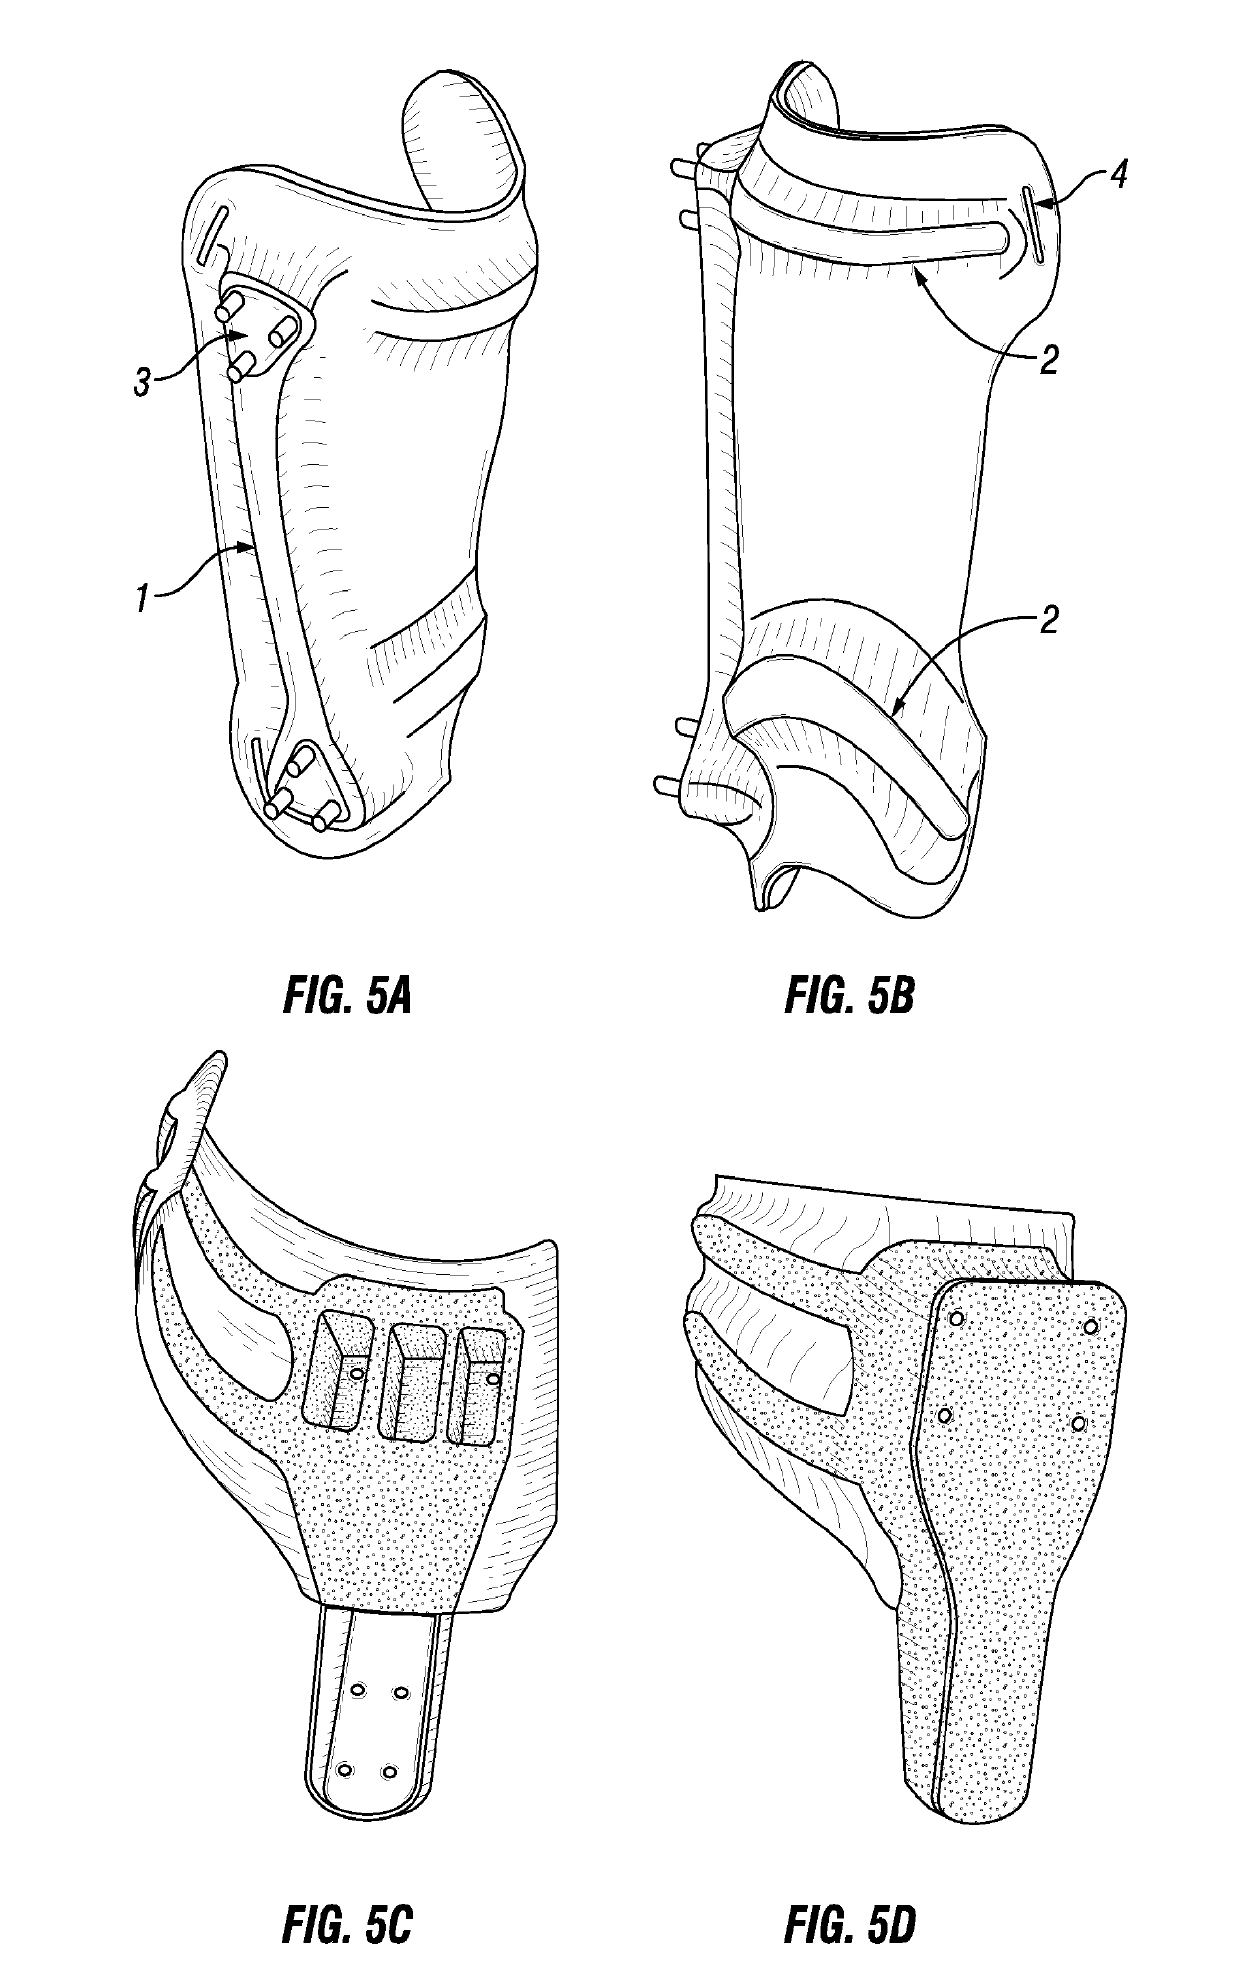 Customizable orthotic/prosthetic braces and lightweight modular exoskeleton